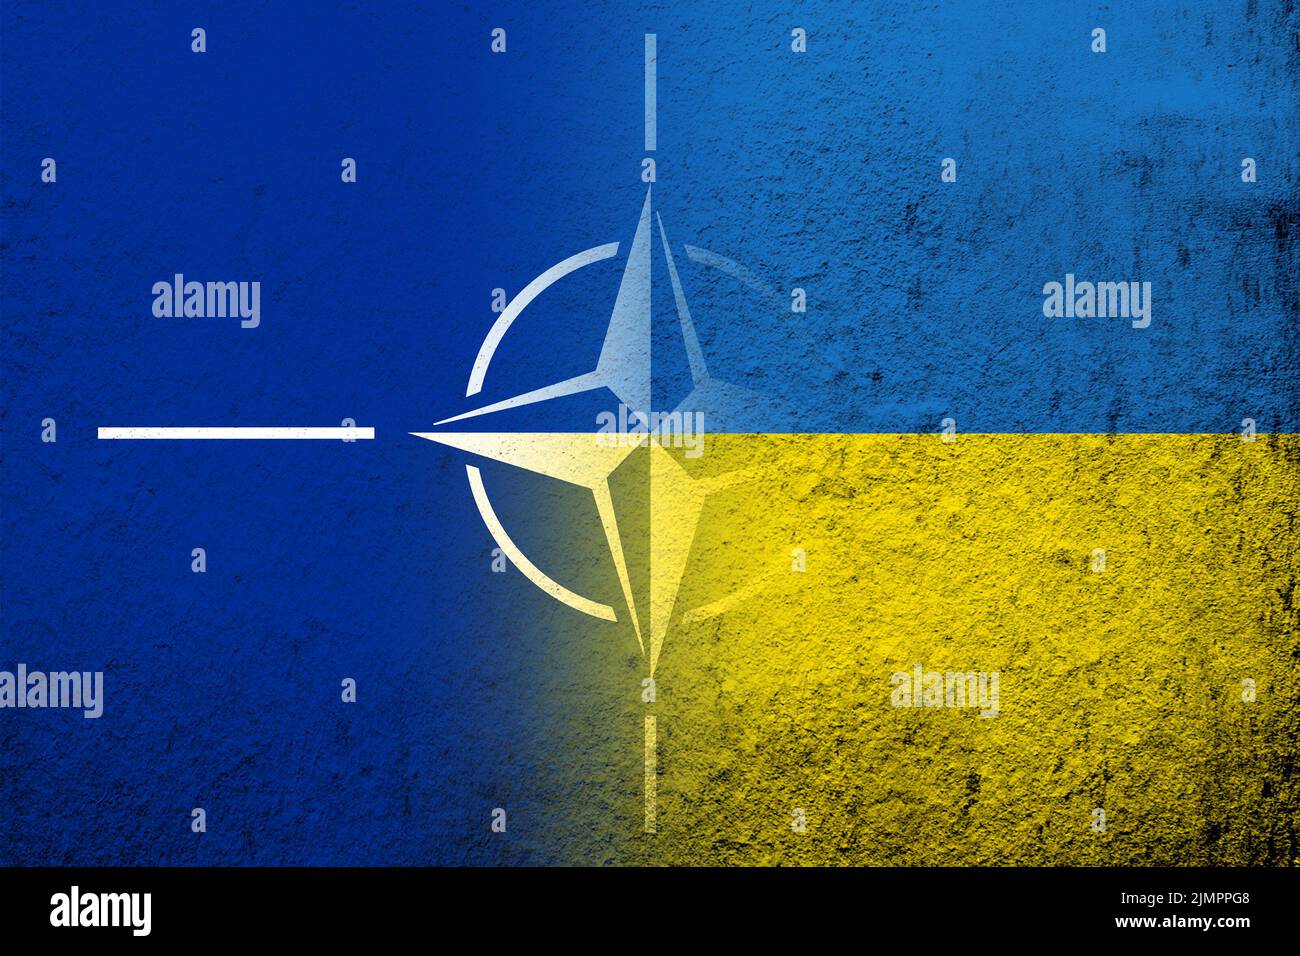 National flag of Ukraine with Flag of North Atlantic Alliance NATO. Grunge background ÐºÐ¾Ð¿Ð¸Ñ Stock Photo